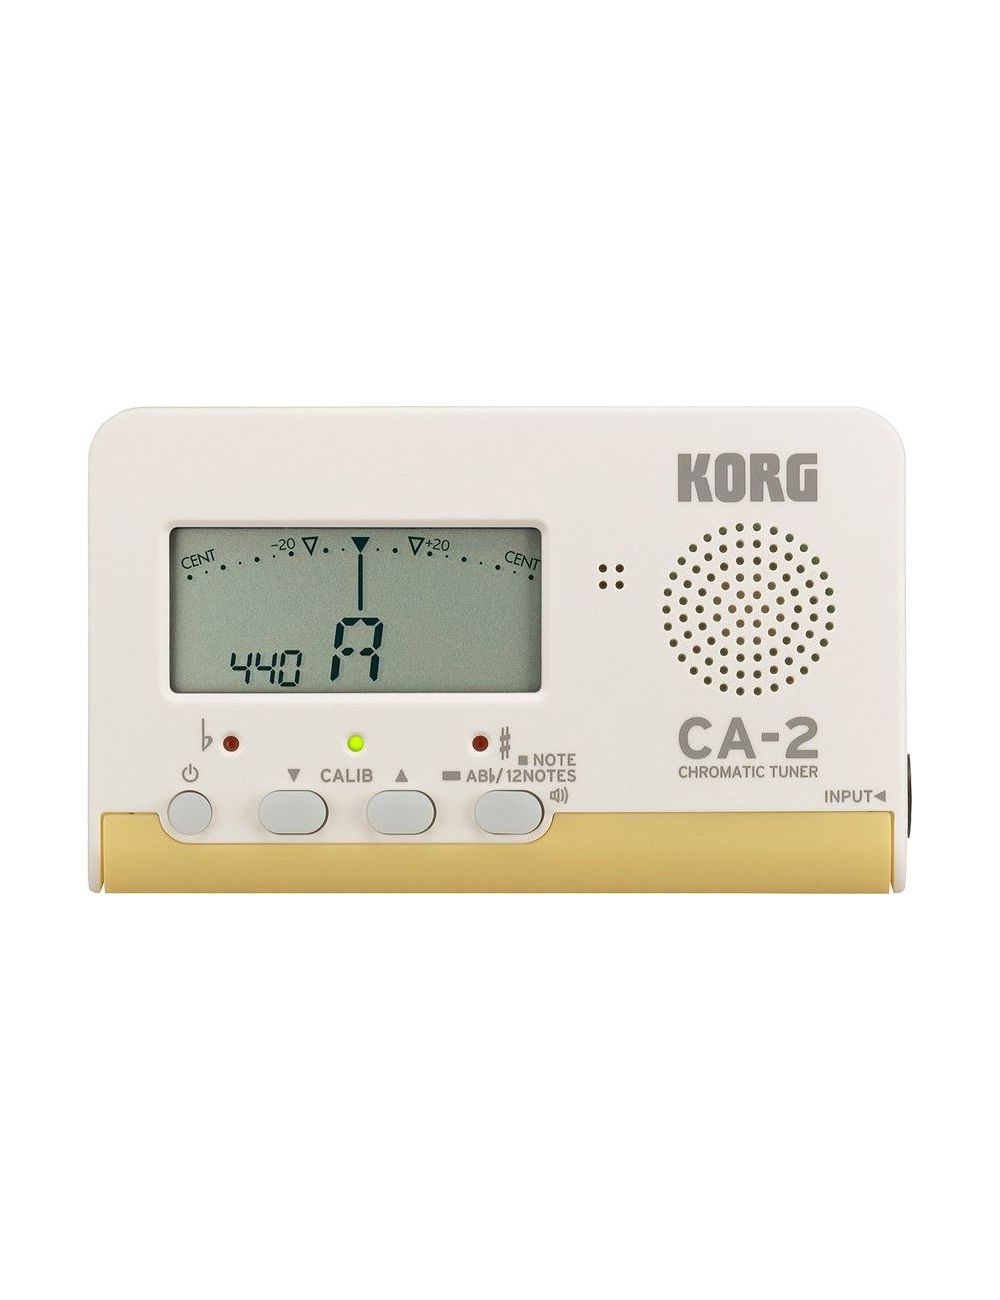 Korg CA-2 chromatic tuner CA-2 tuners and metronomes